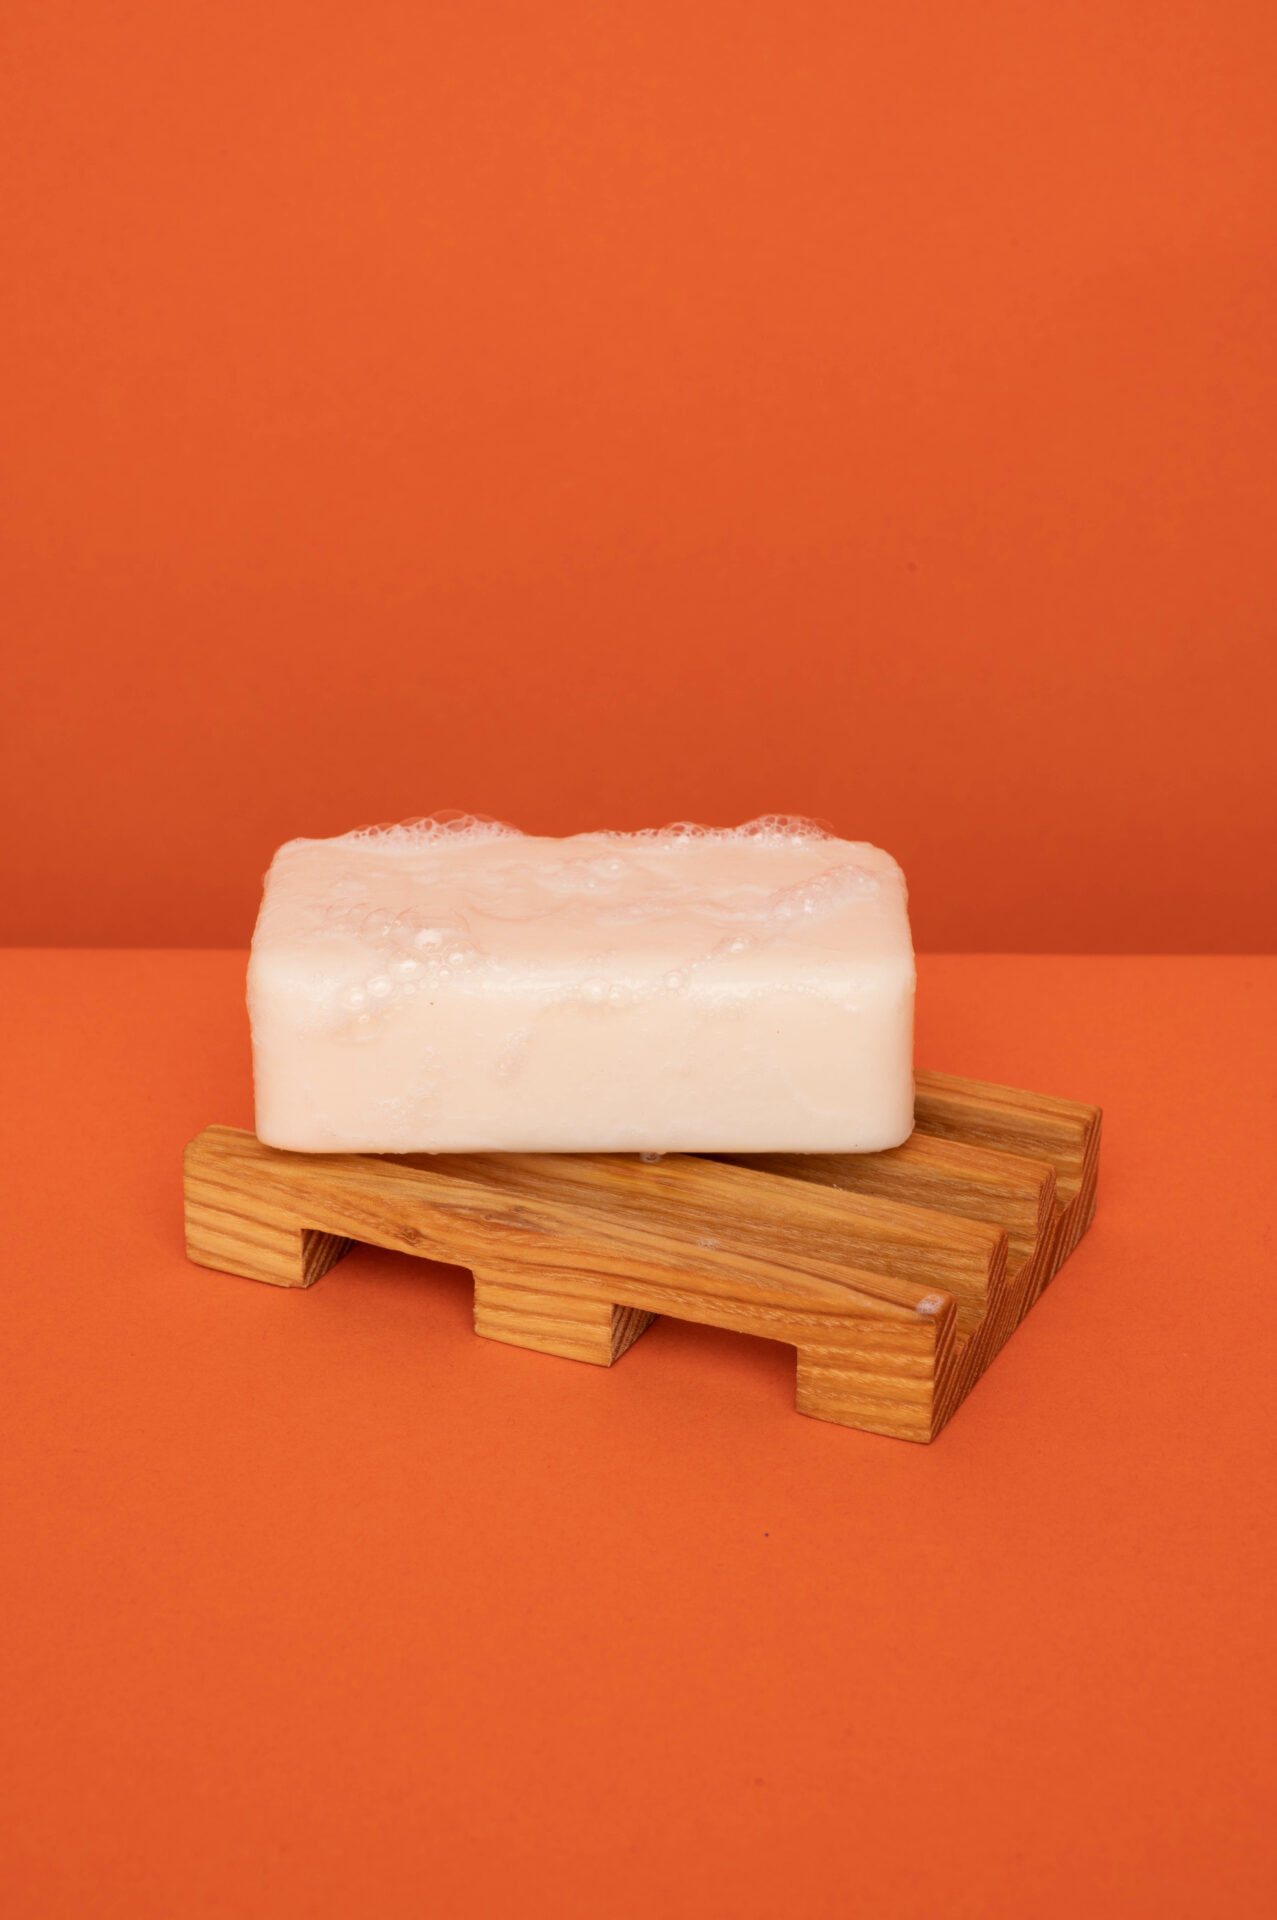 Production propre Sonnenhof - porte-savon en bois sur fond de couleur